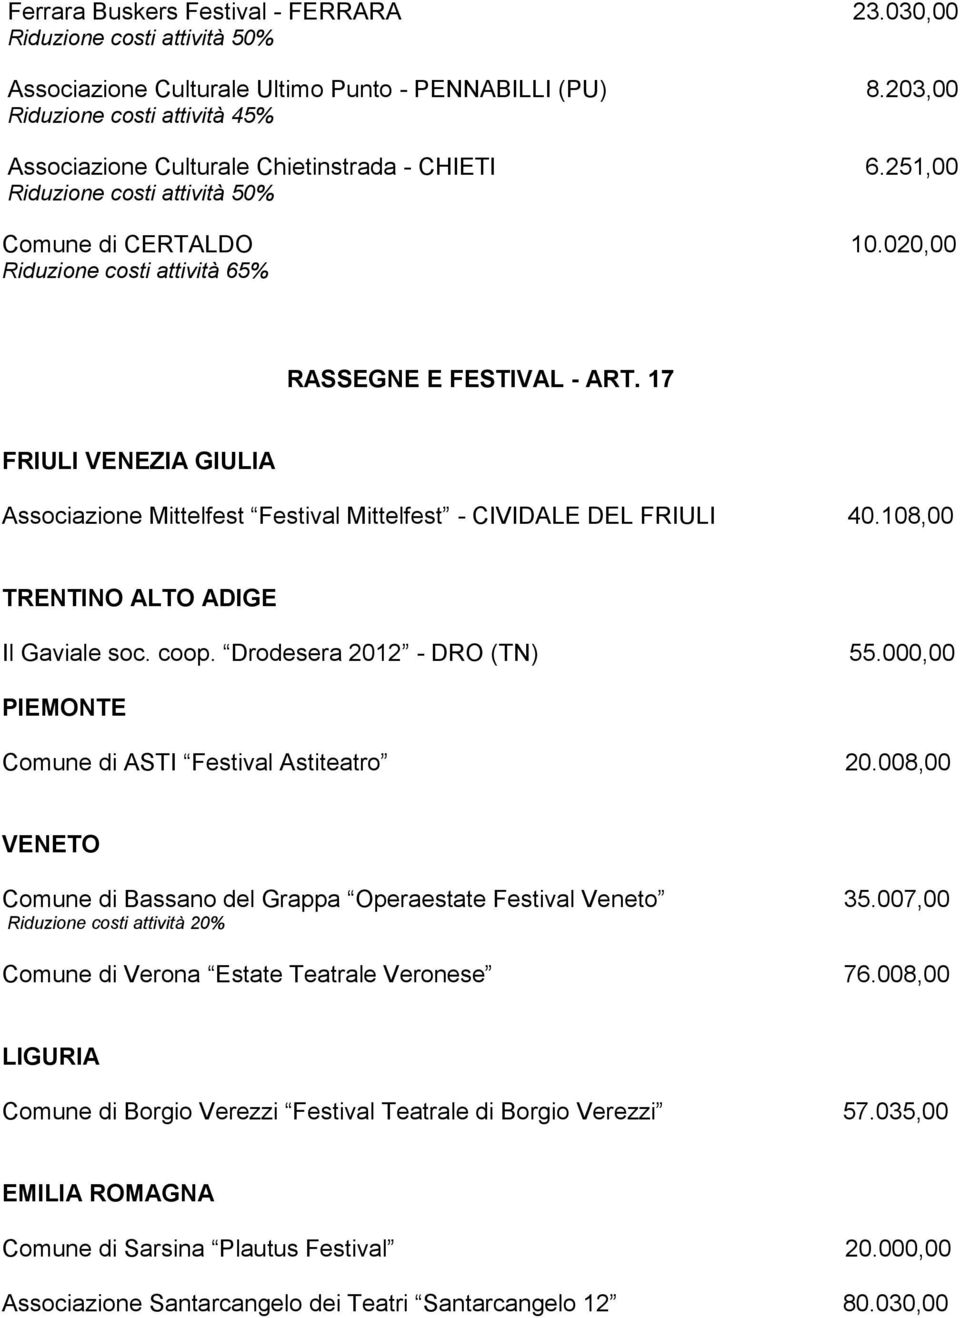 17 FRIULI VENEZIA GIULIA Associazione Mittelfest Festival Mittelfest - CIVIDALE DEL FRIULI 40.108,00 TRENTINO ALTO ADIGE Il Gaviale soc. coop. Drodesera 2012 - DRO (TN) 55.